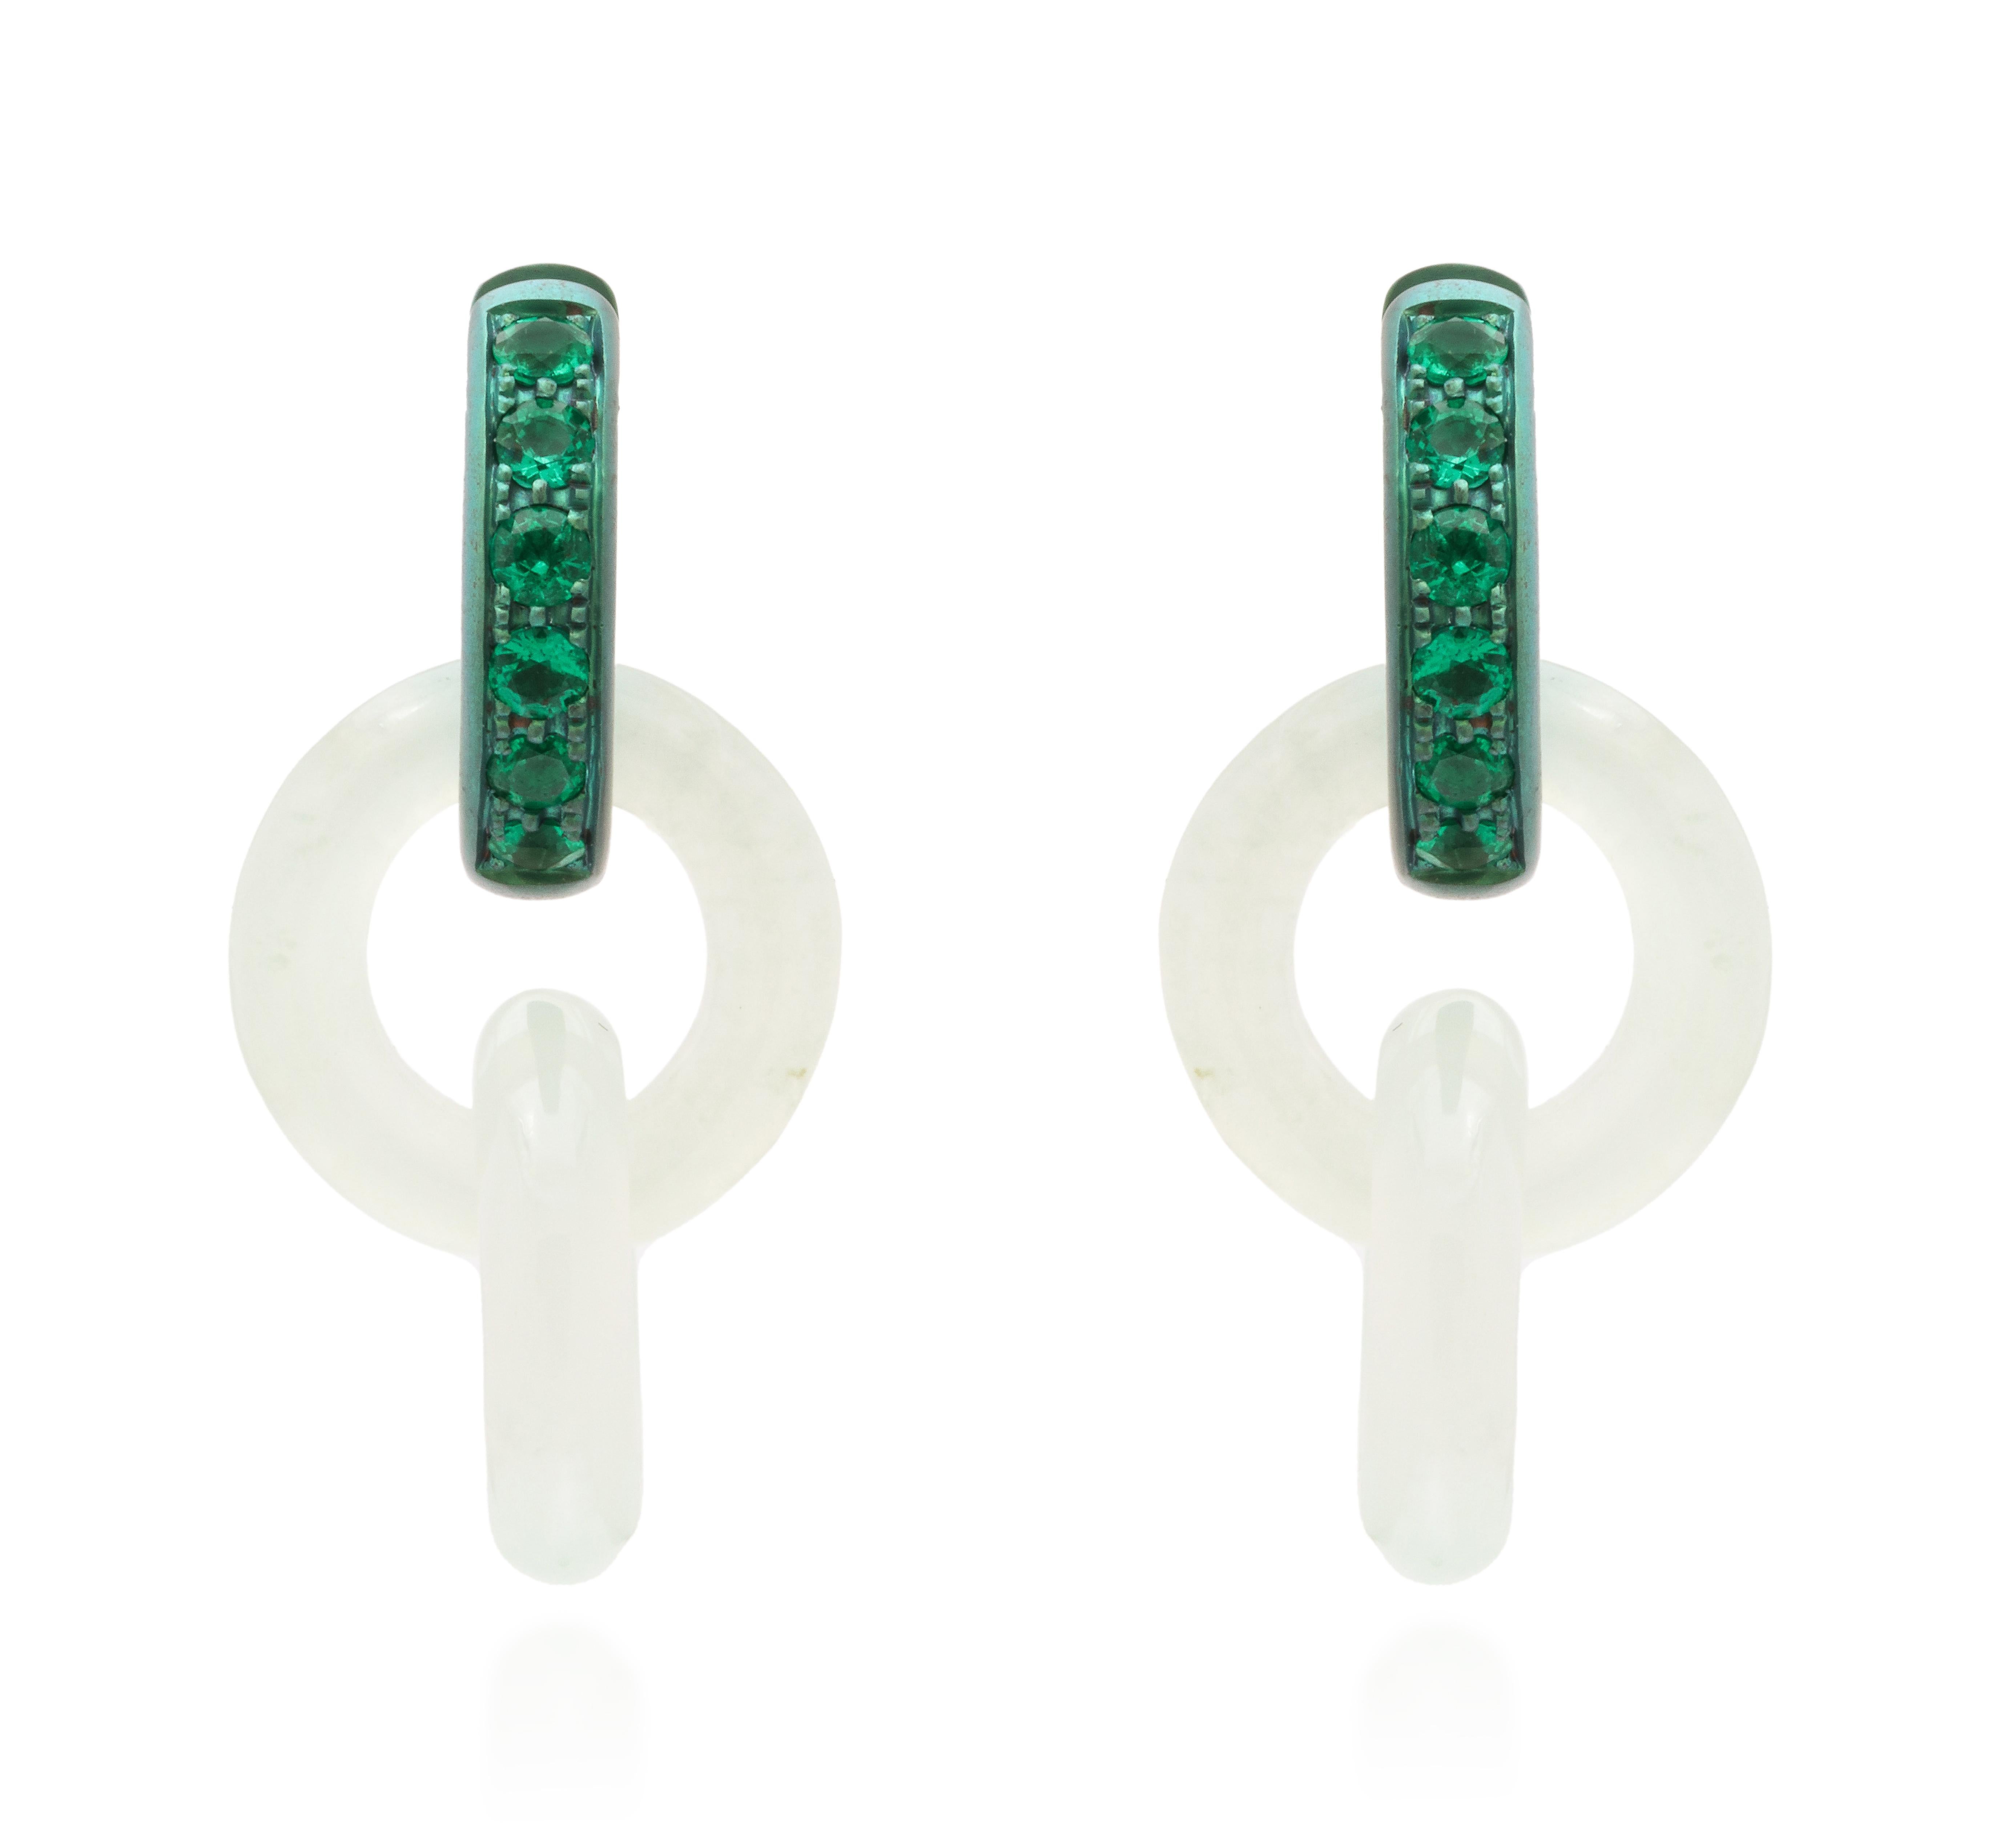 Ces anneaux de jade exquis, méticuleusement taillés à la main dans un seul bloc de jade, illustrent le savoir-faire inégalé de la sculpture sur pierre. À la fois élégante et rare, la complexité du design Elegne témoigne de la véritable maîtrise de